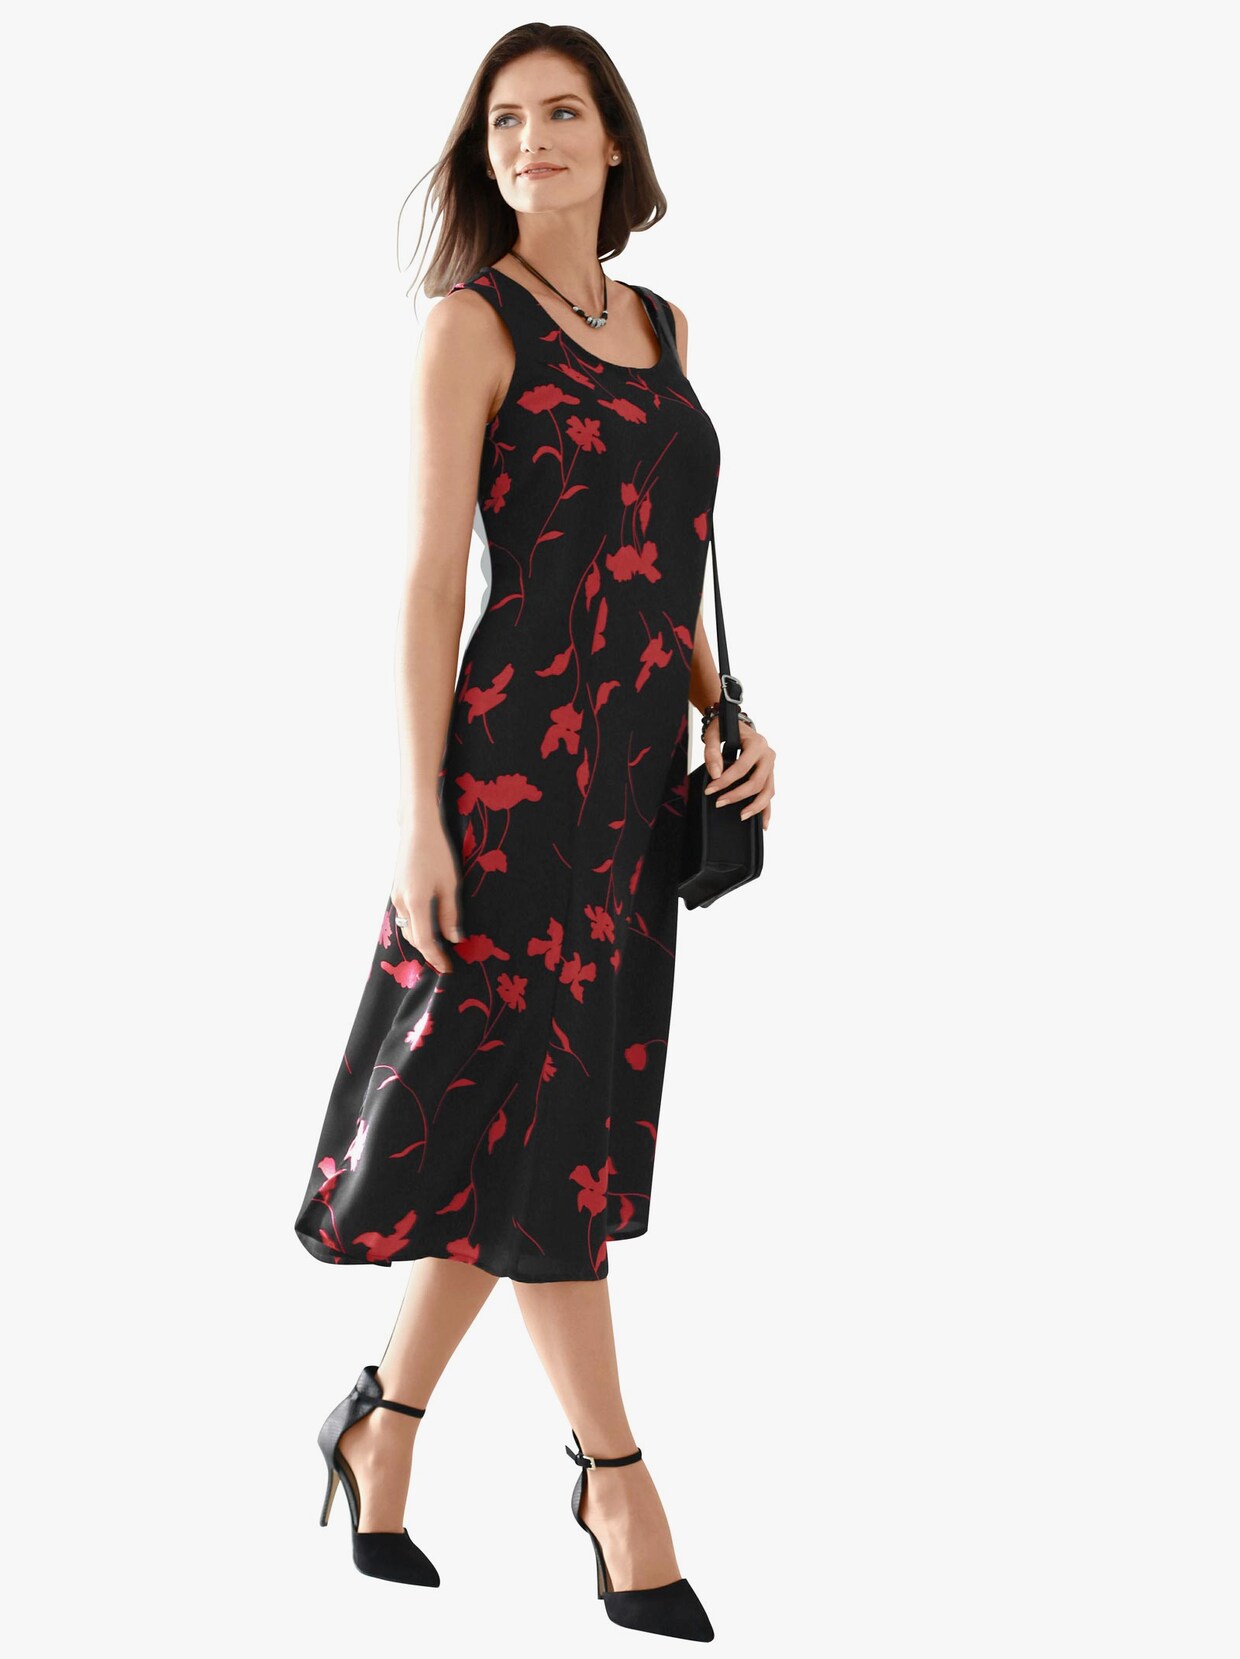 Klänning med tryck - svart-röd